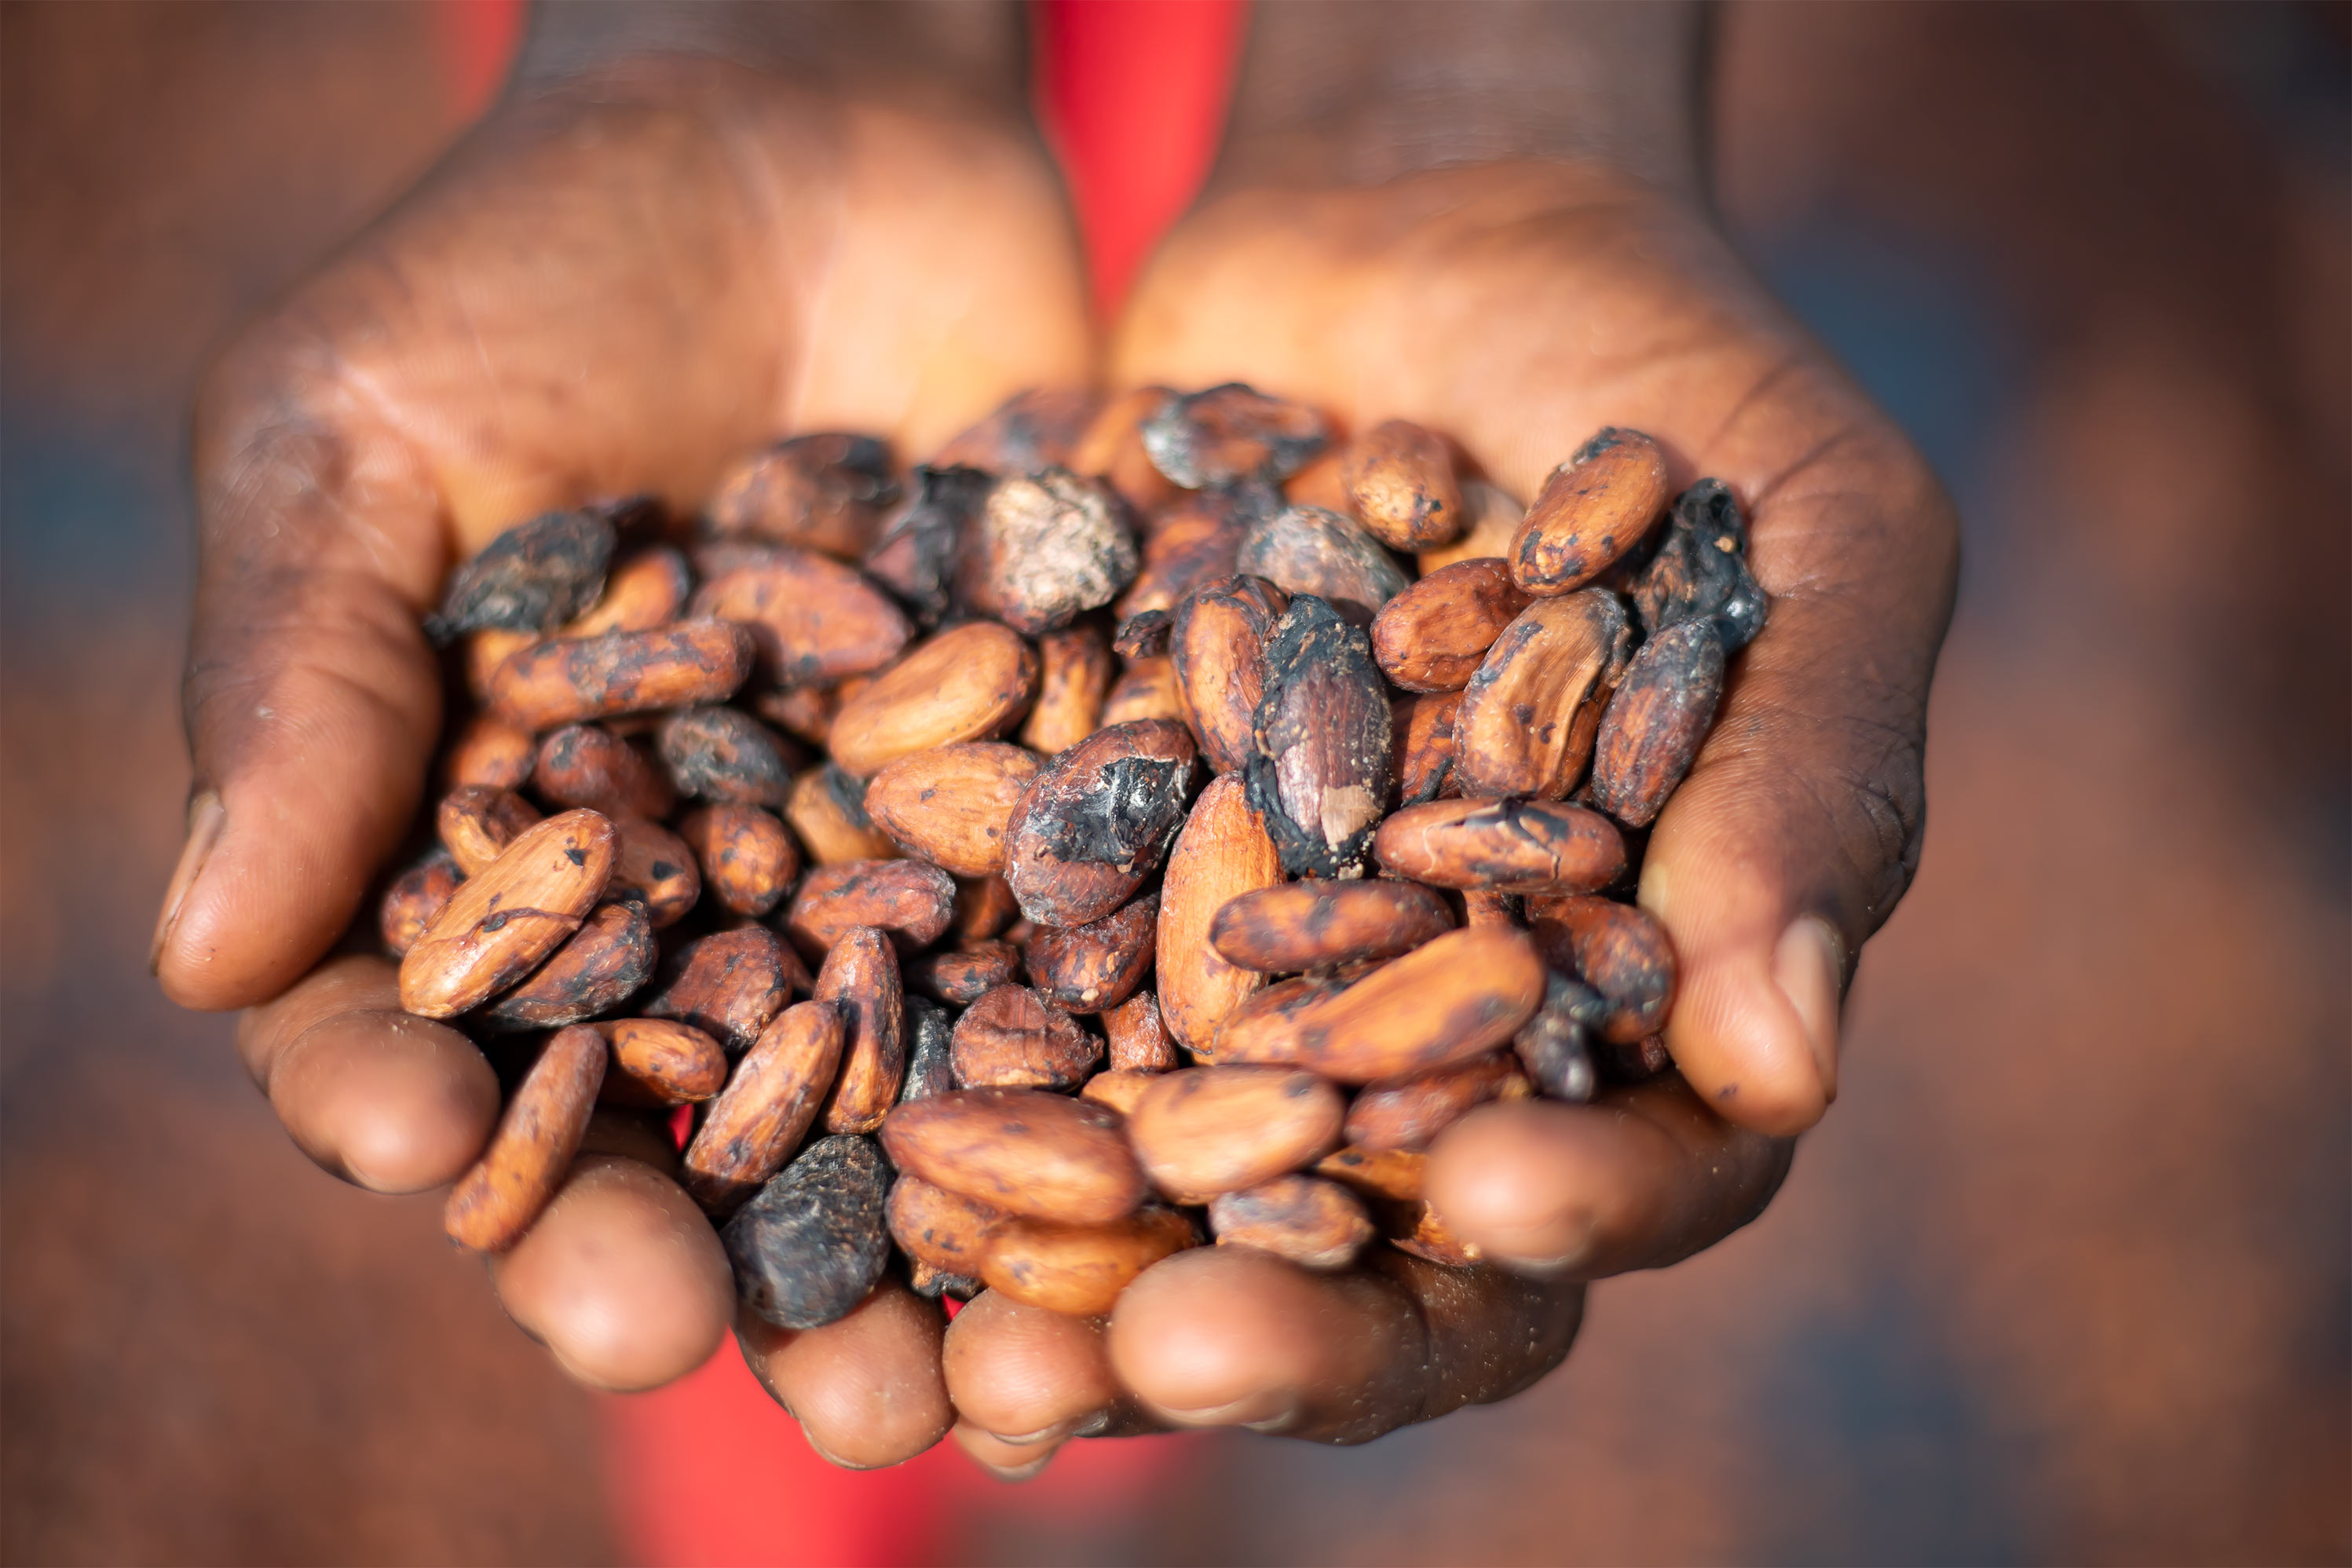 Mars Wrigley w Europie zobowiązuje się do wykorzystania 100% odpowiedzialnie pozyskiwanego kakao od 2023 r.